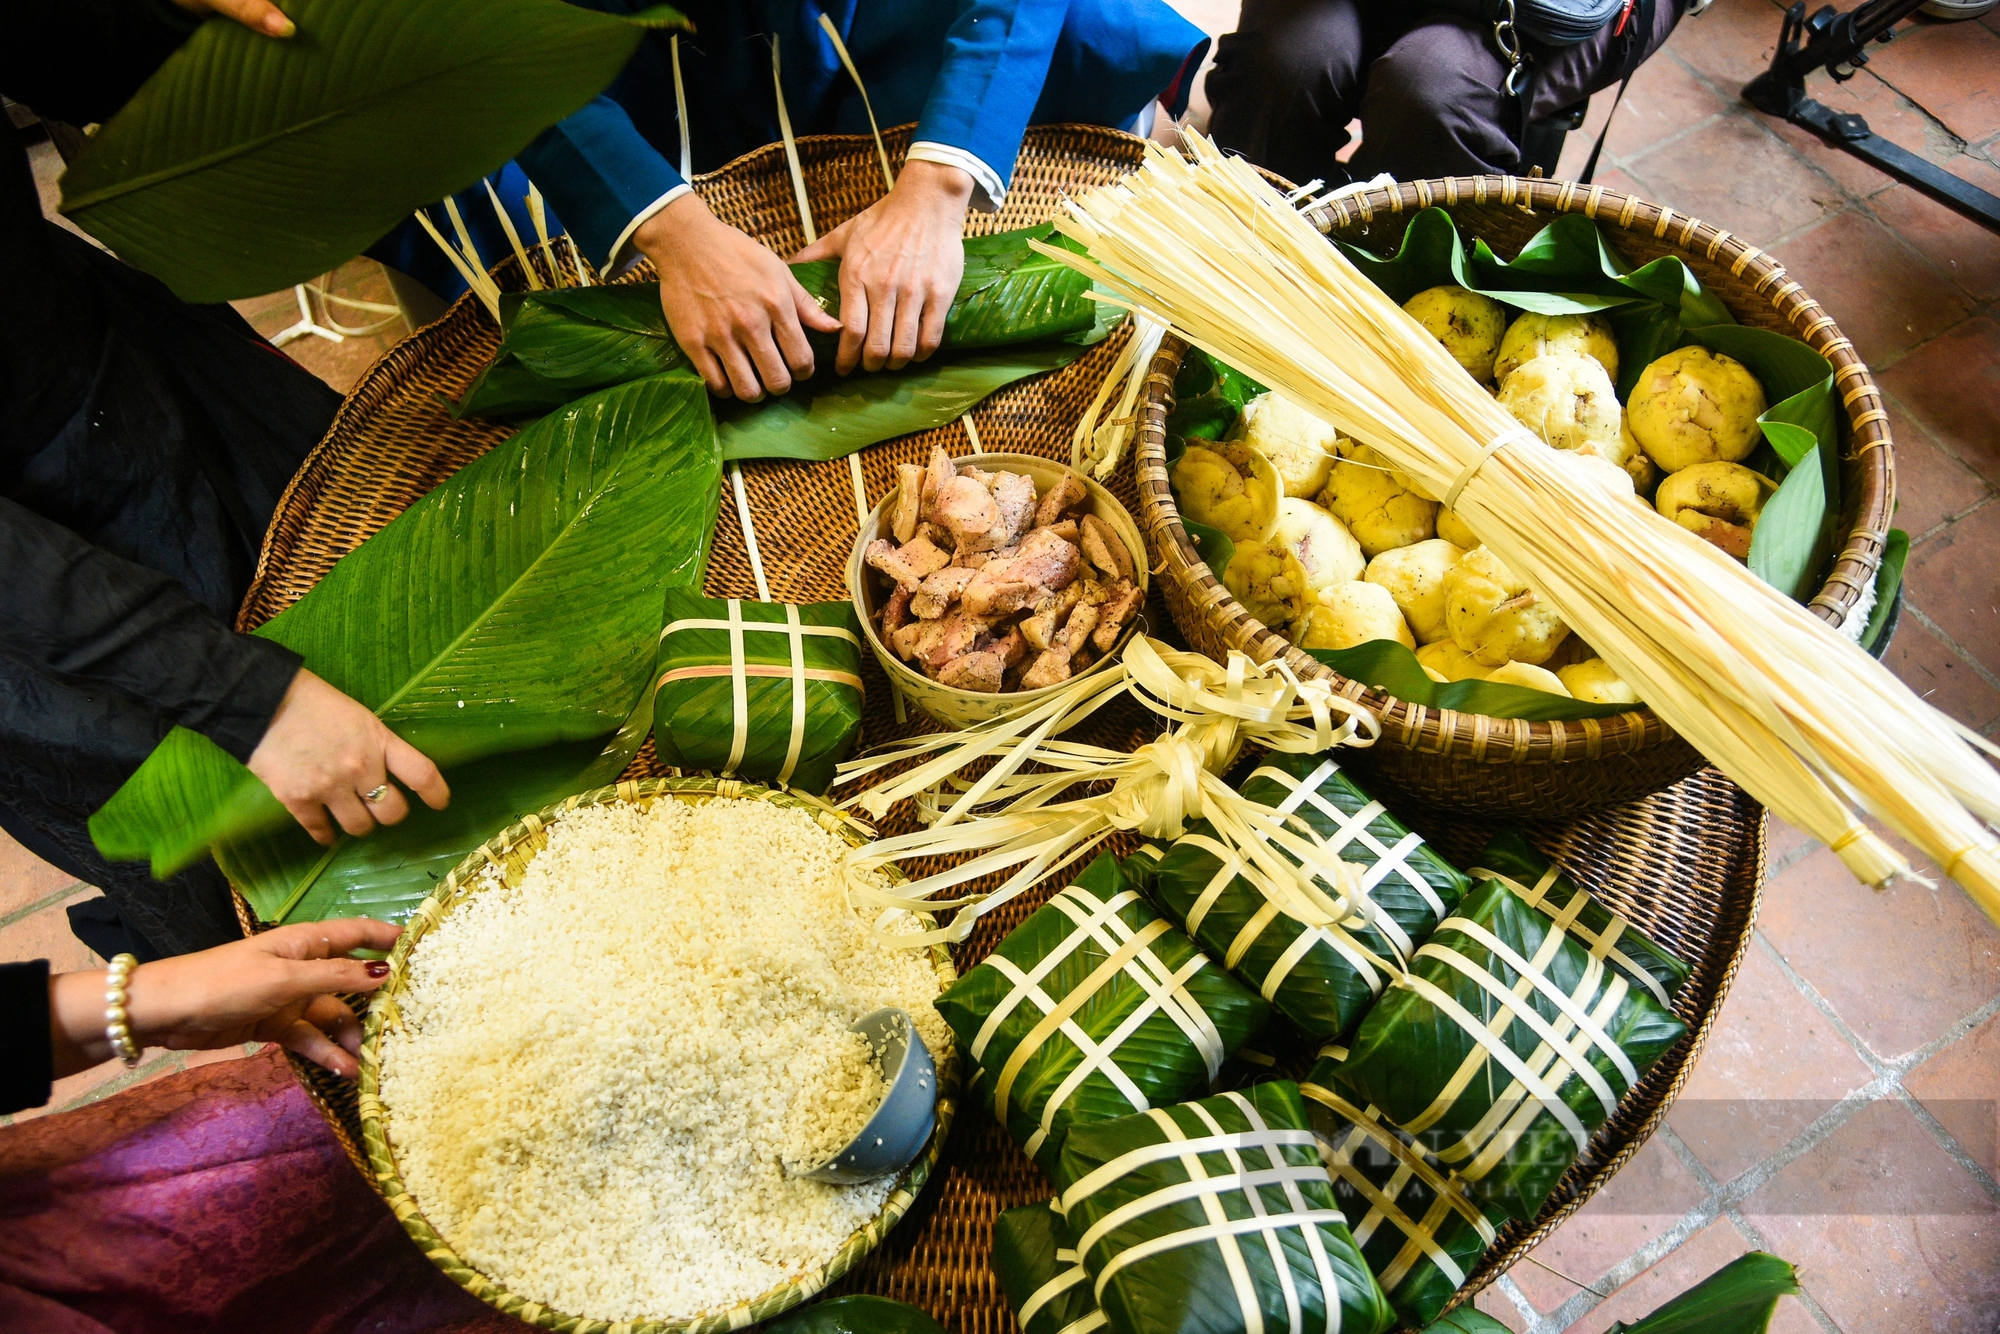 Khách quốc tế thích thú khi xem người Hà Nội gói bánh chưng truyền thống dịp Tết Nguyên đán- Ảnh 6.